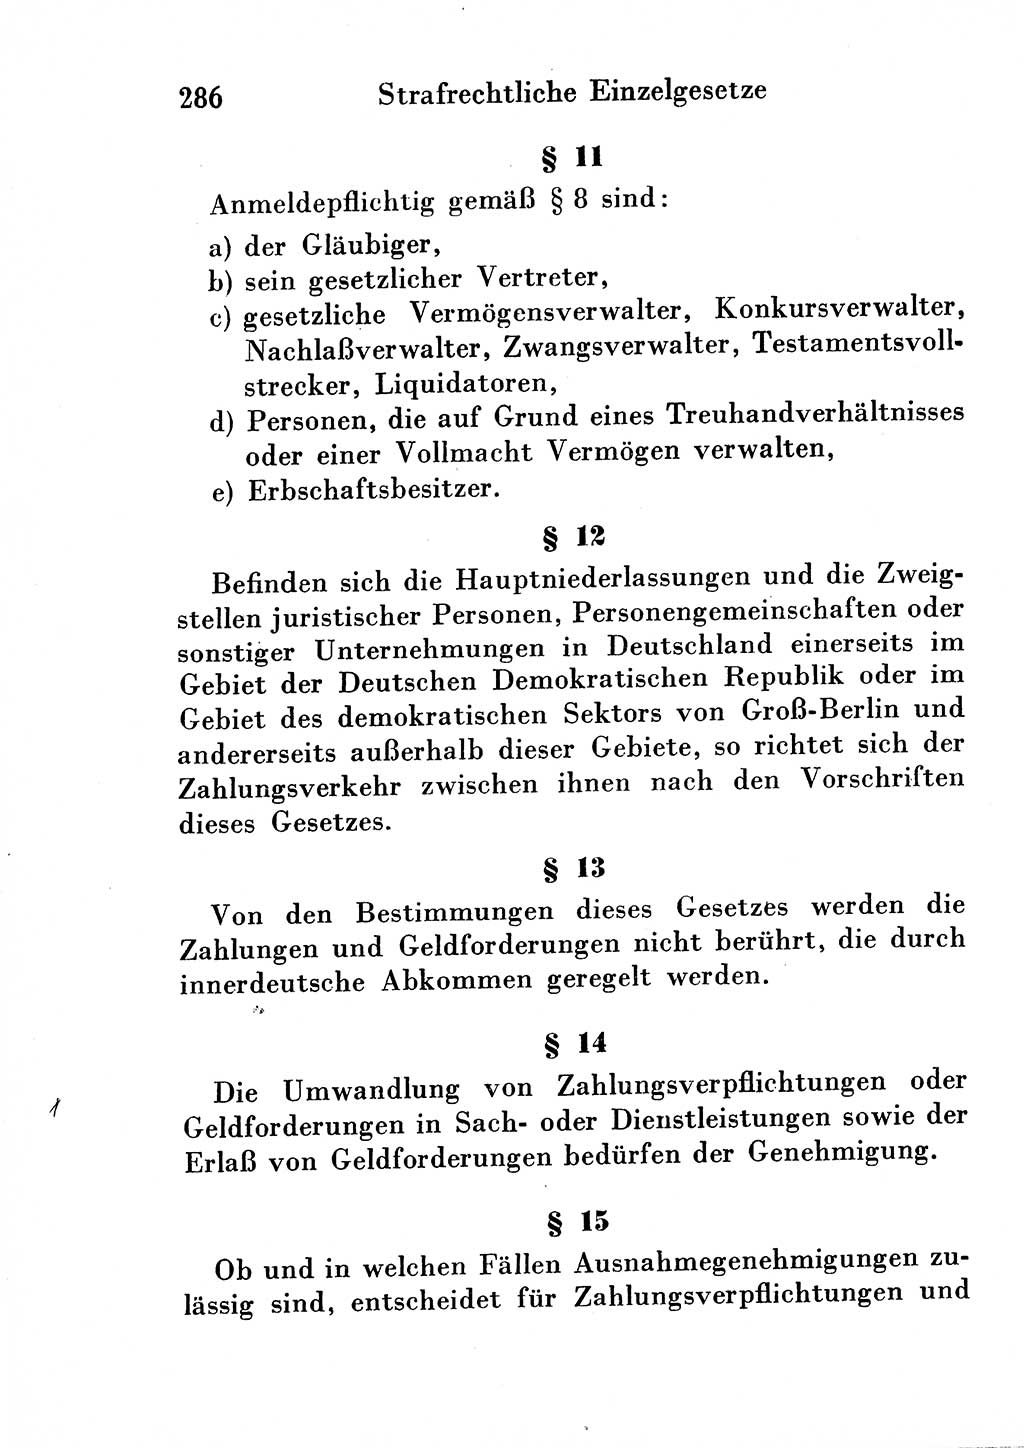 Strafgesetzbuch (StGB) und andere Strafgesetze [Deutsche Demokratische Republik (DDR)] 1954, Seite 286 (StGB Strafges. DDR 1954, S. 286)